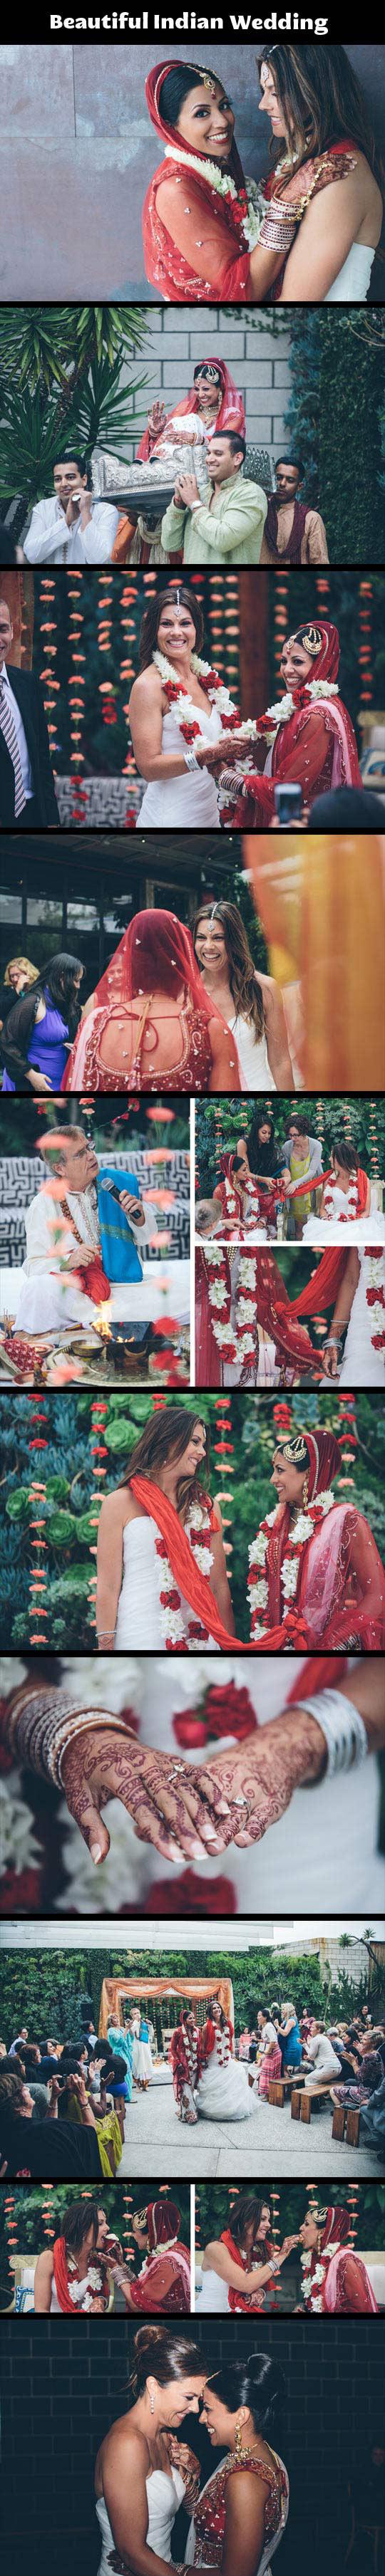 Ever Seen An Indian Wedding?